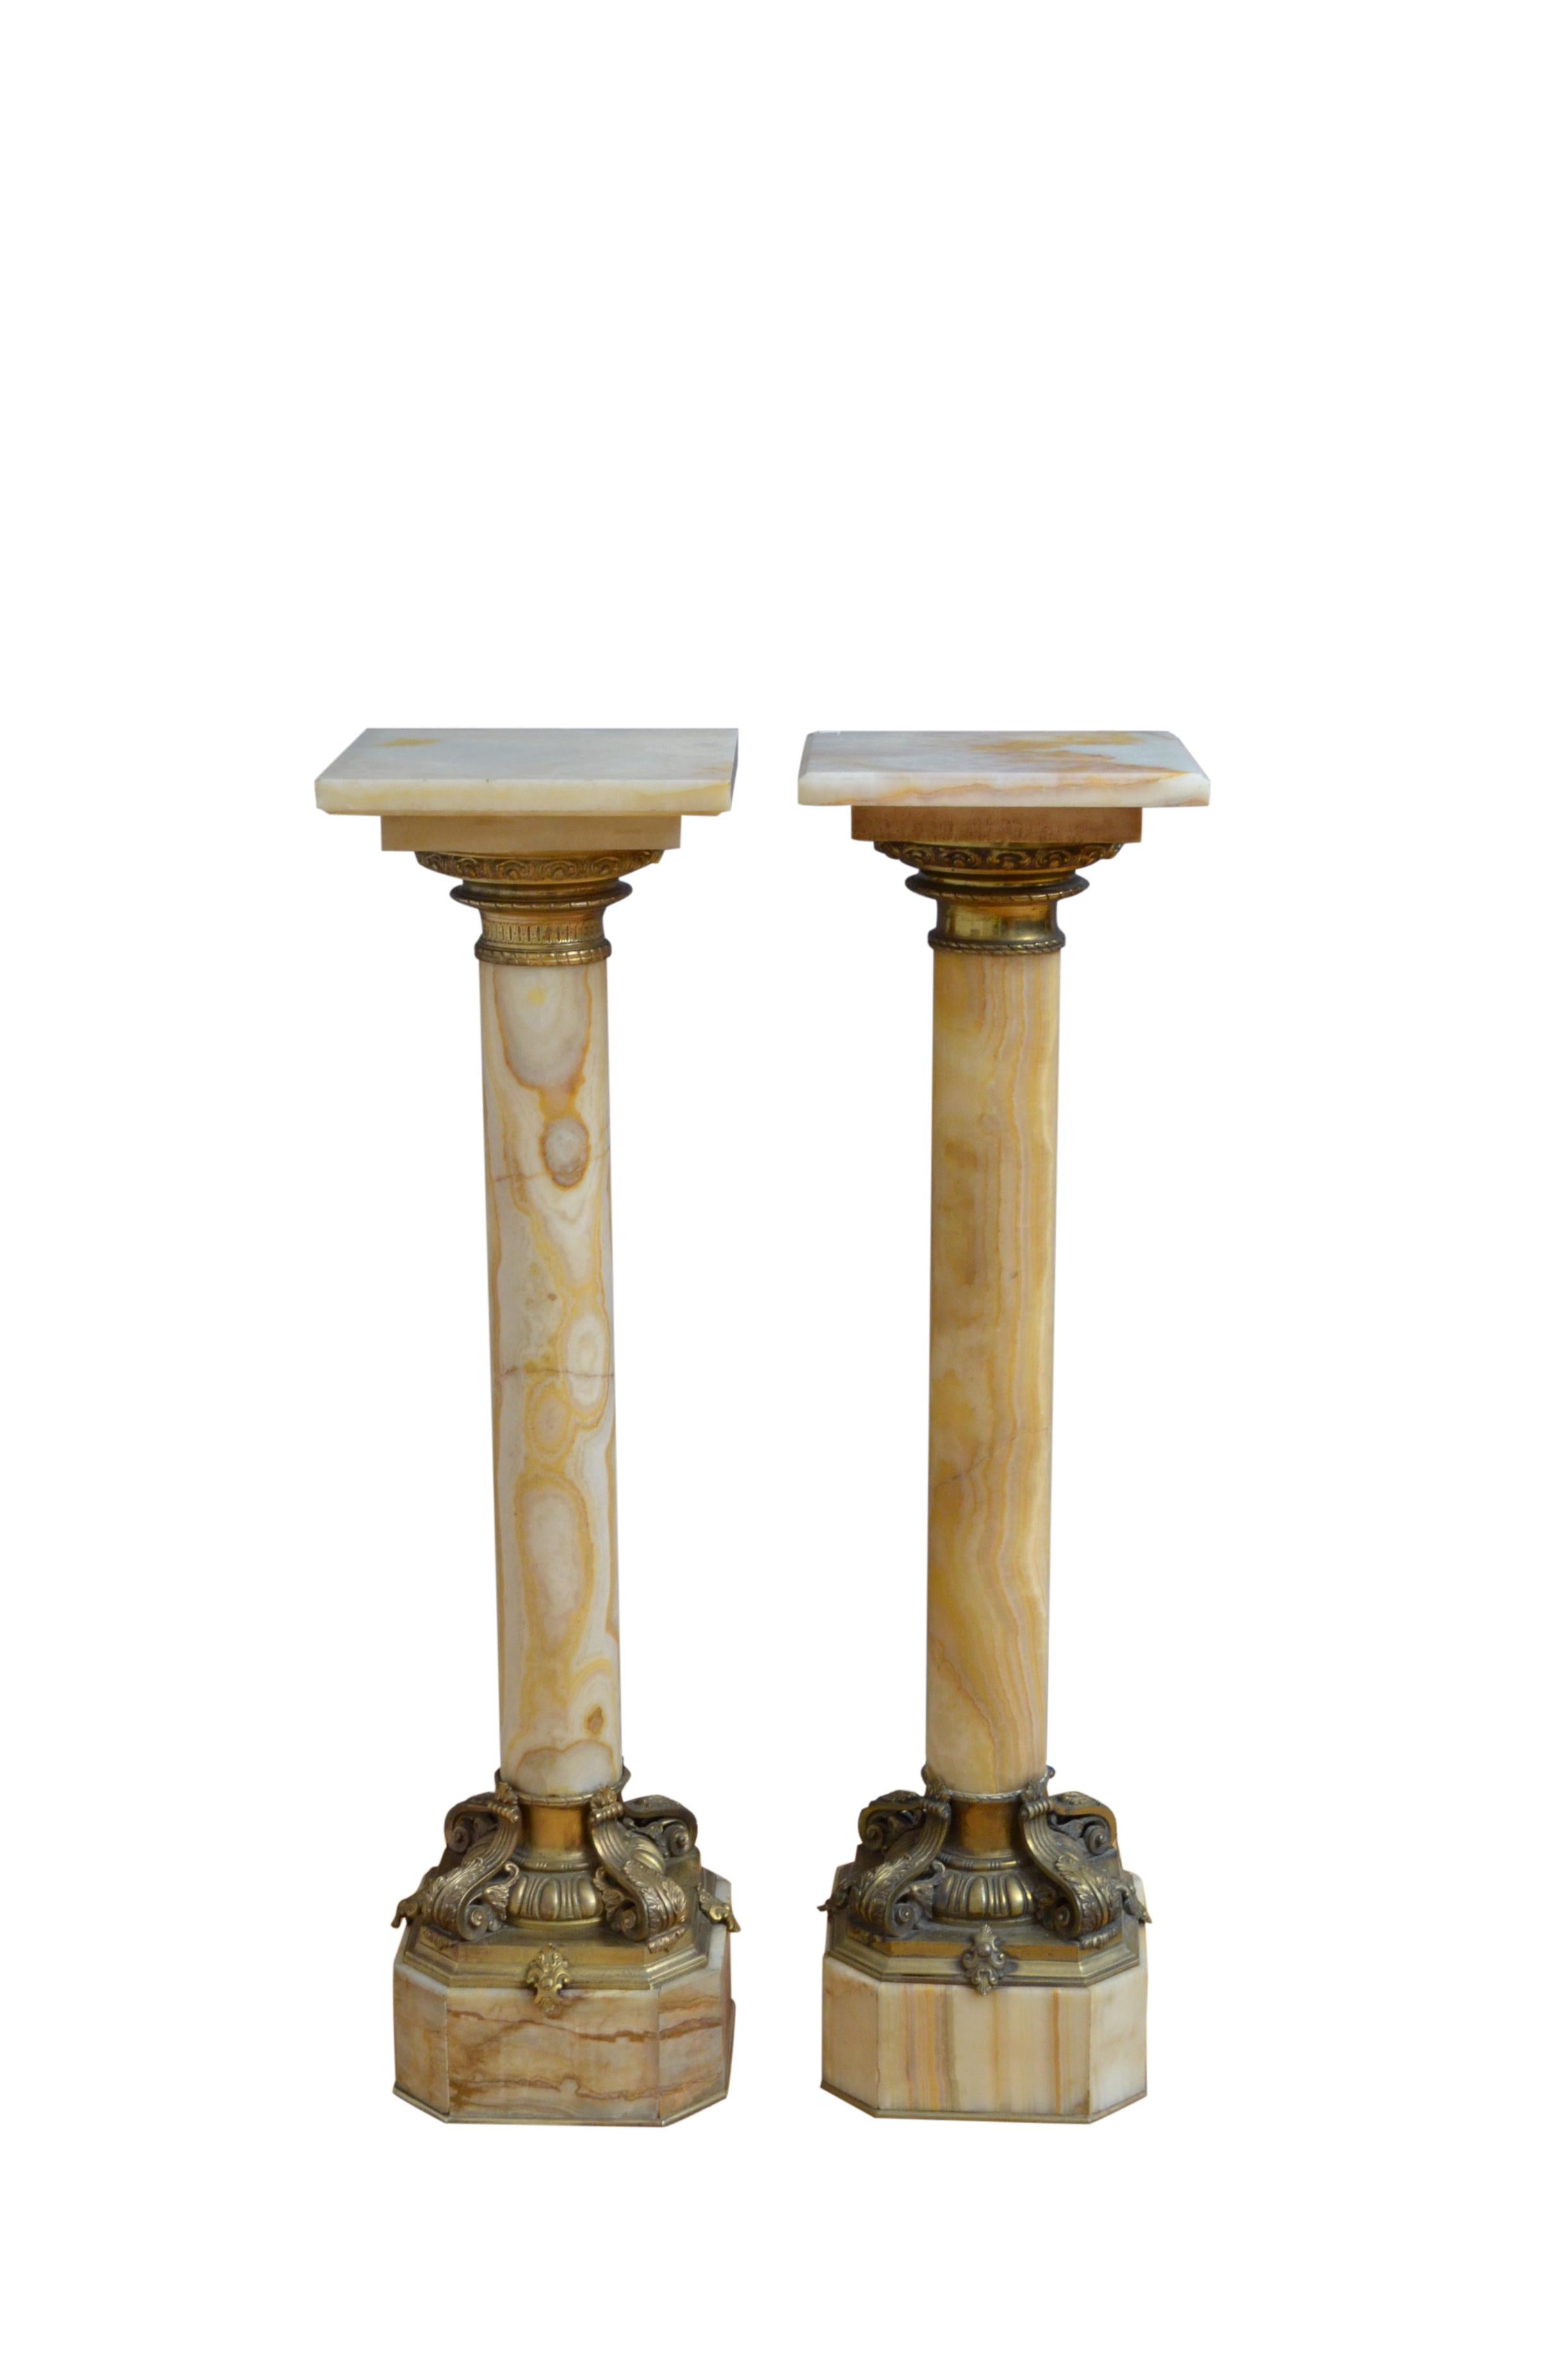 Paire assortie d'exquis piédestaux en onyx du XIXe siècle, chacun avec un plateau tournant avec un collier en bronze doré en dessous, une colonne substantielle avec une variété de couleurs se terminant par une très belle base avec un décor d'oves et